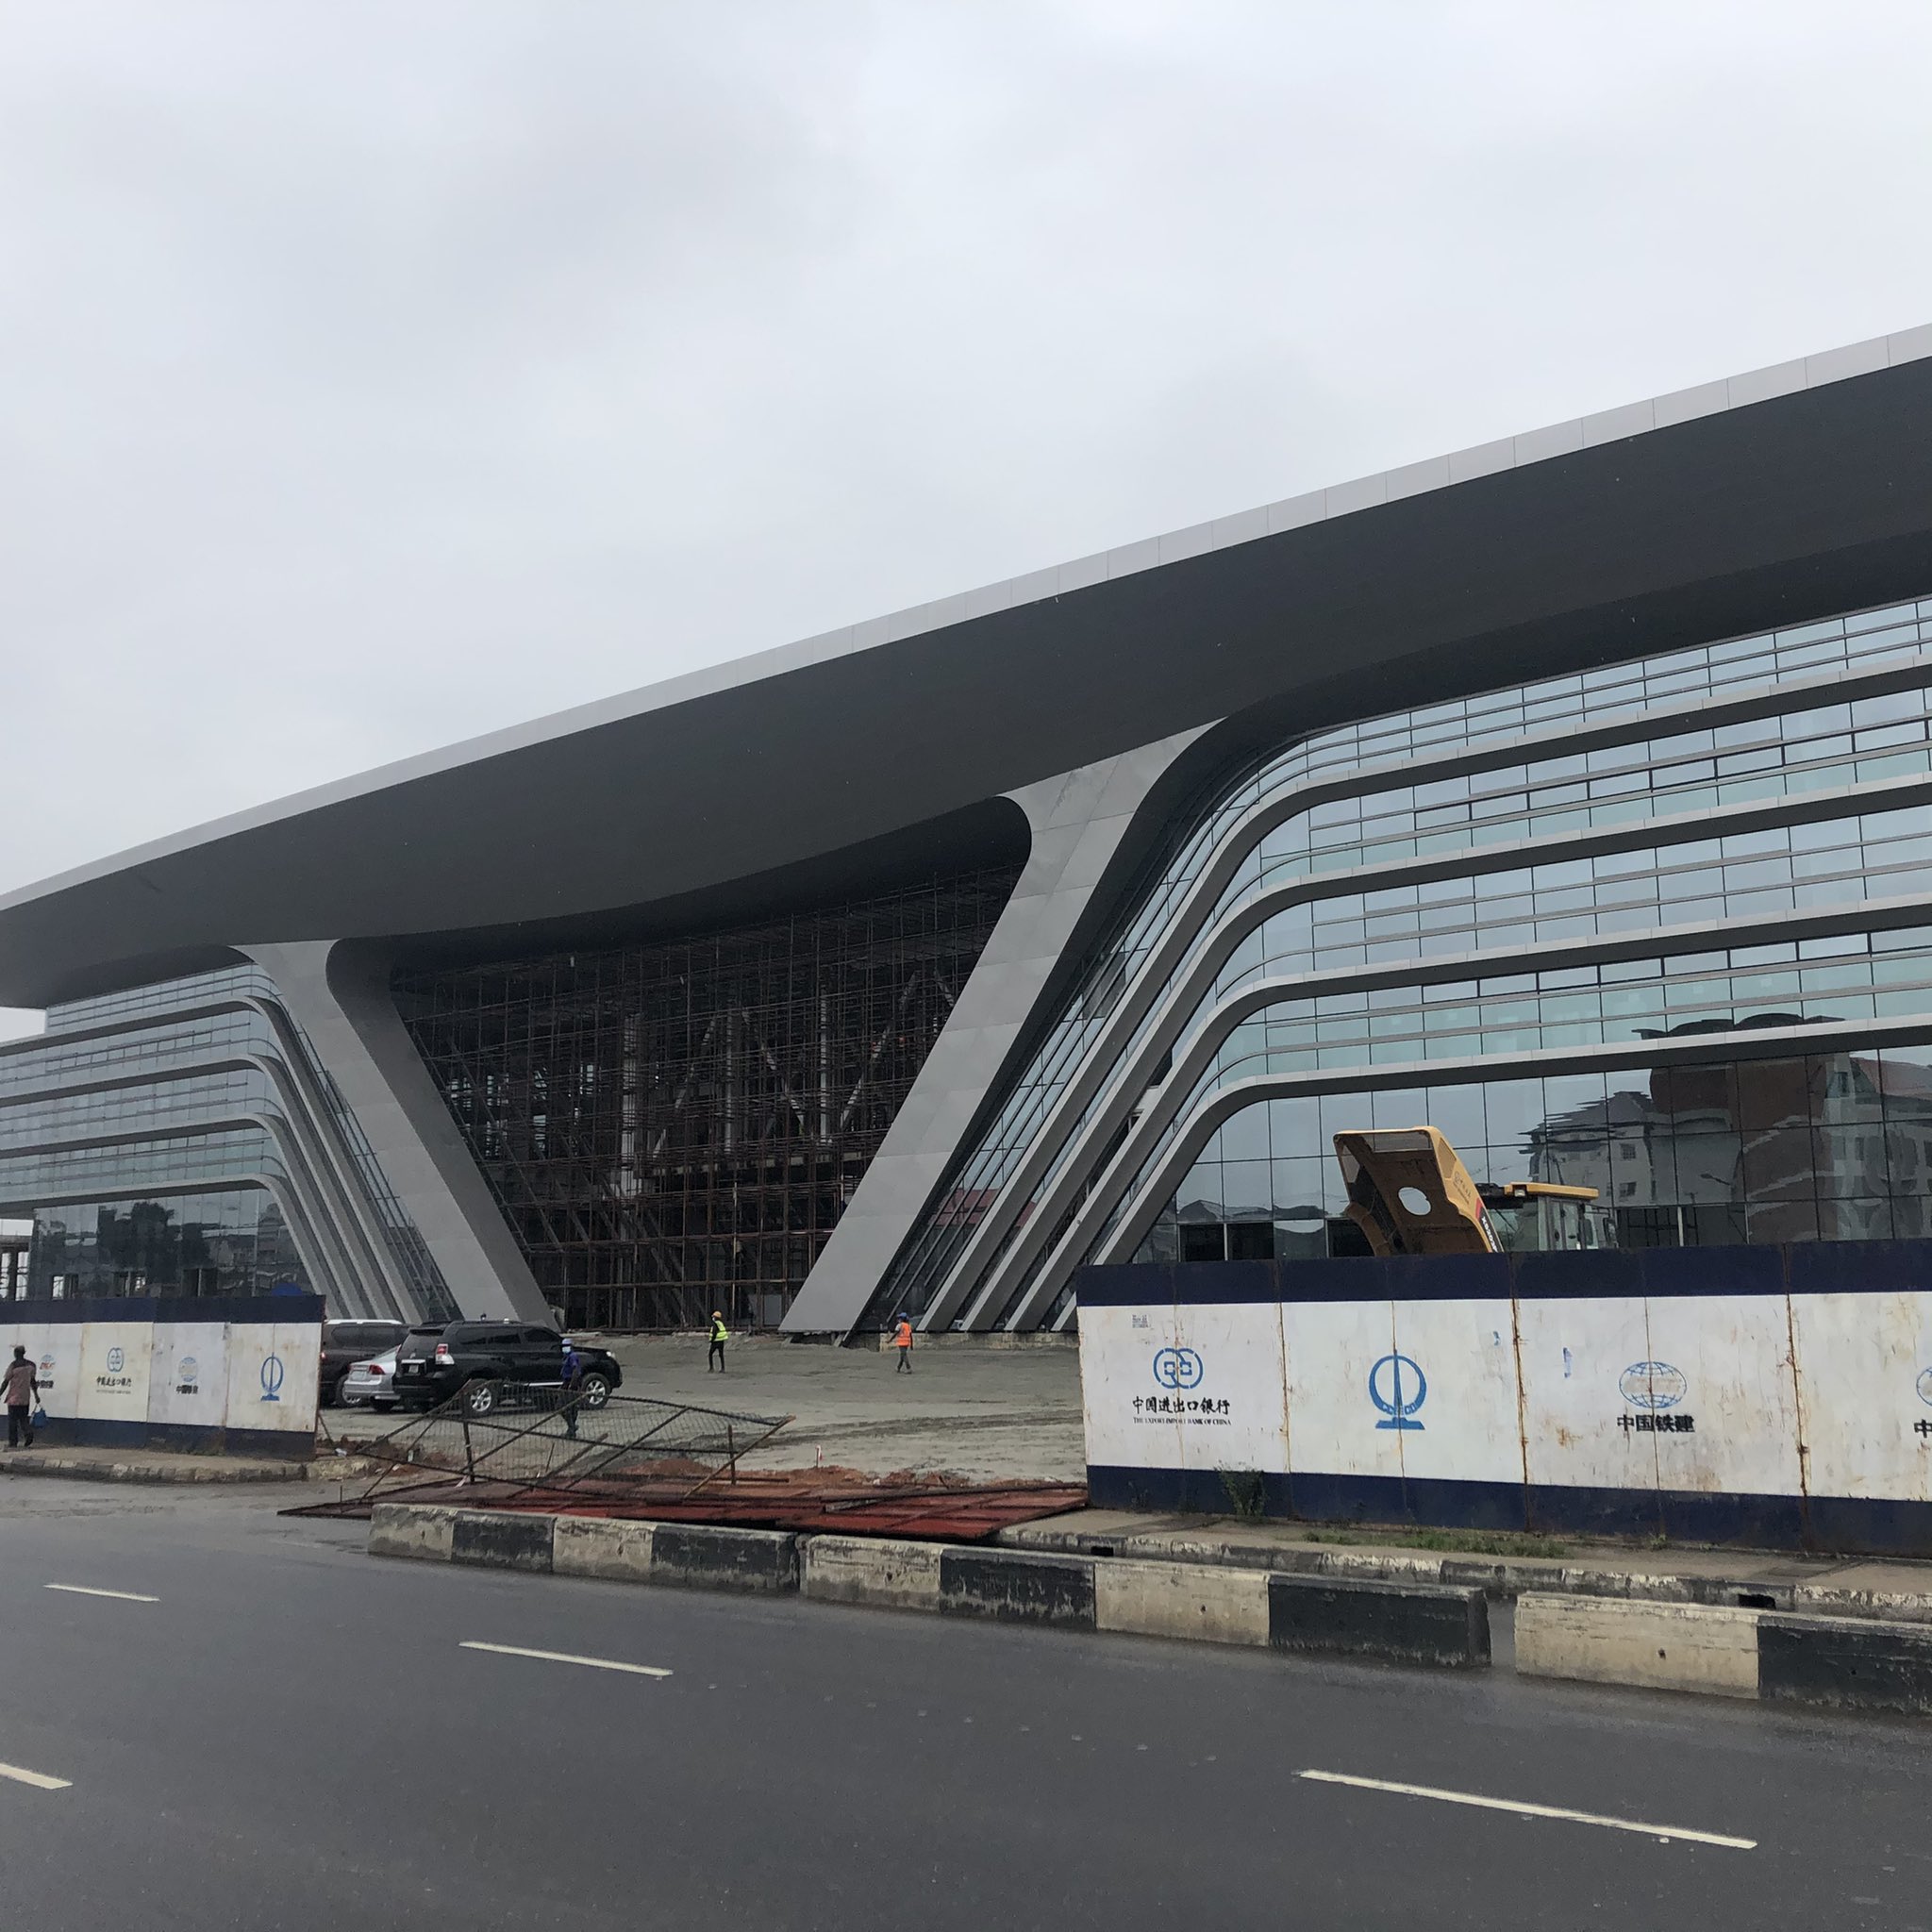 Lagos Ebute-Metta Railway Terminal